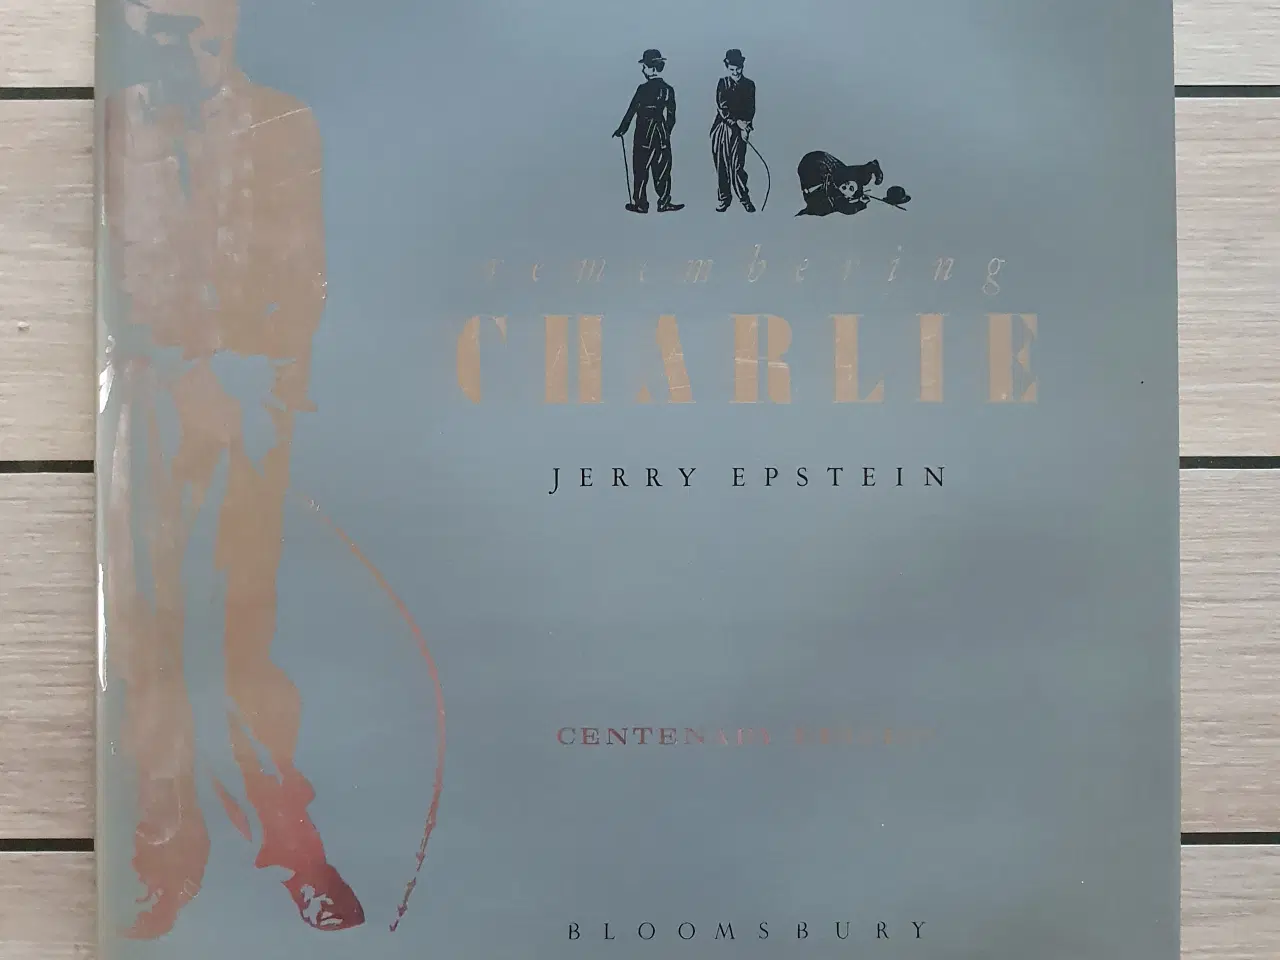 Billede 2 - Remembering Charlie - af Jerry Epstein 